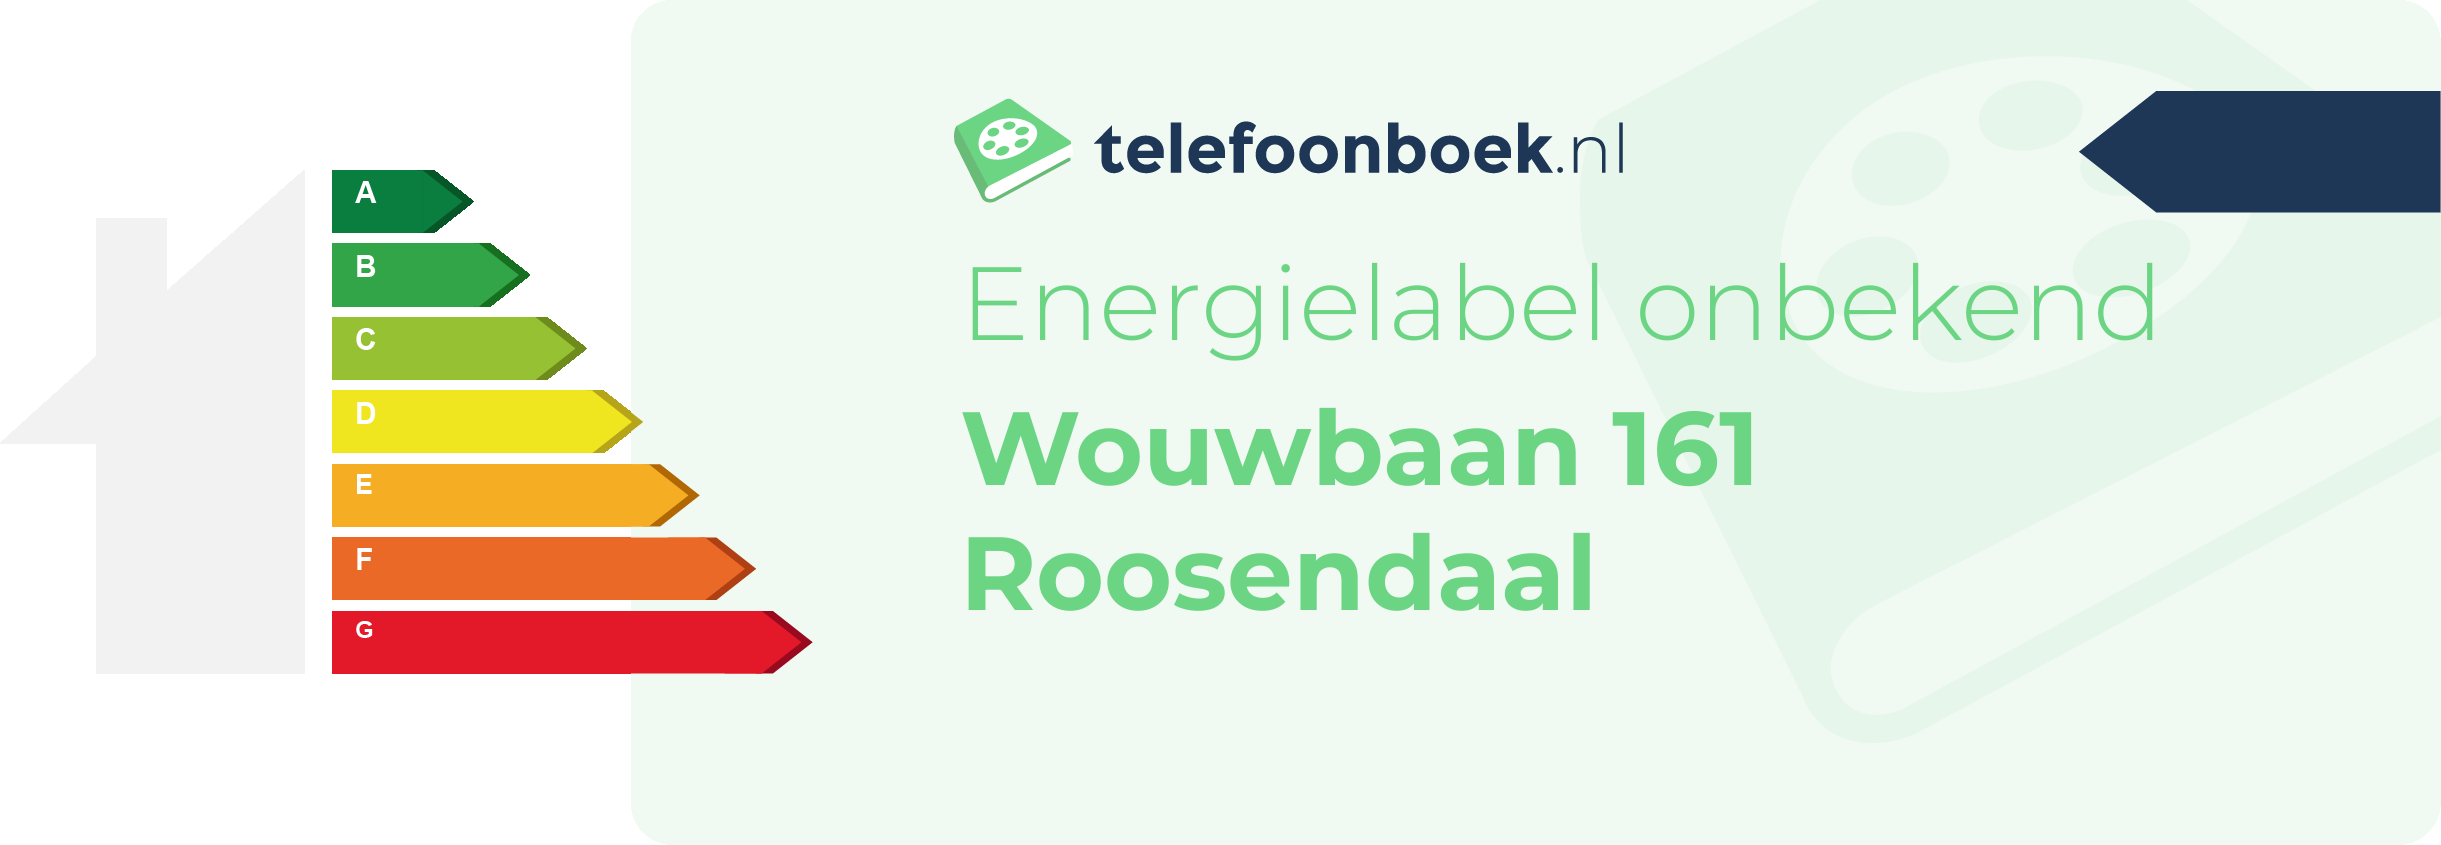 Energielabel Wouwbaan 161 Roosendaal